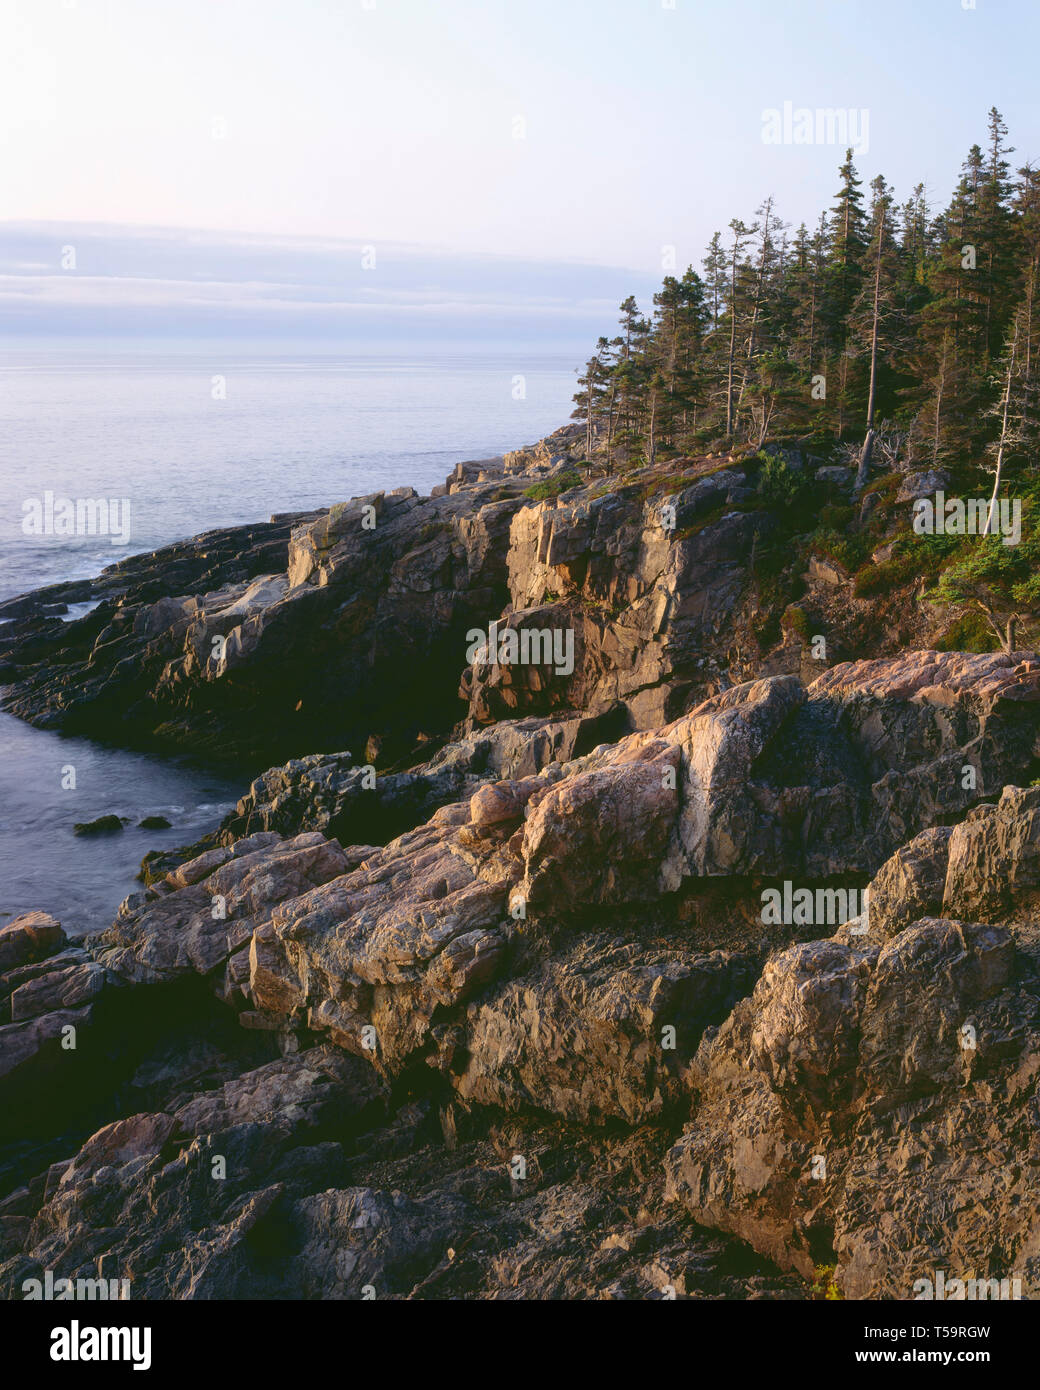 USA, le Maine, l'Acadia National Park, Rocky, côte de granit répond à une mer calme sur l'océan Atlantique, vue vers le sud depuis près de Otter Point. Banque D'Images